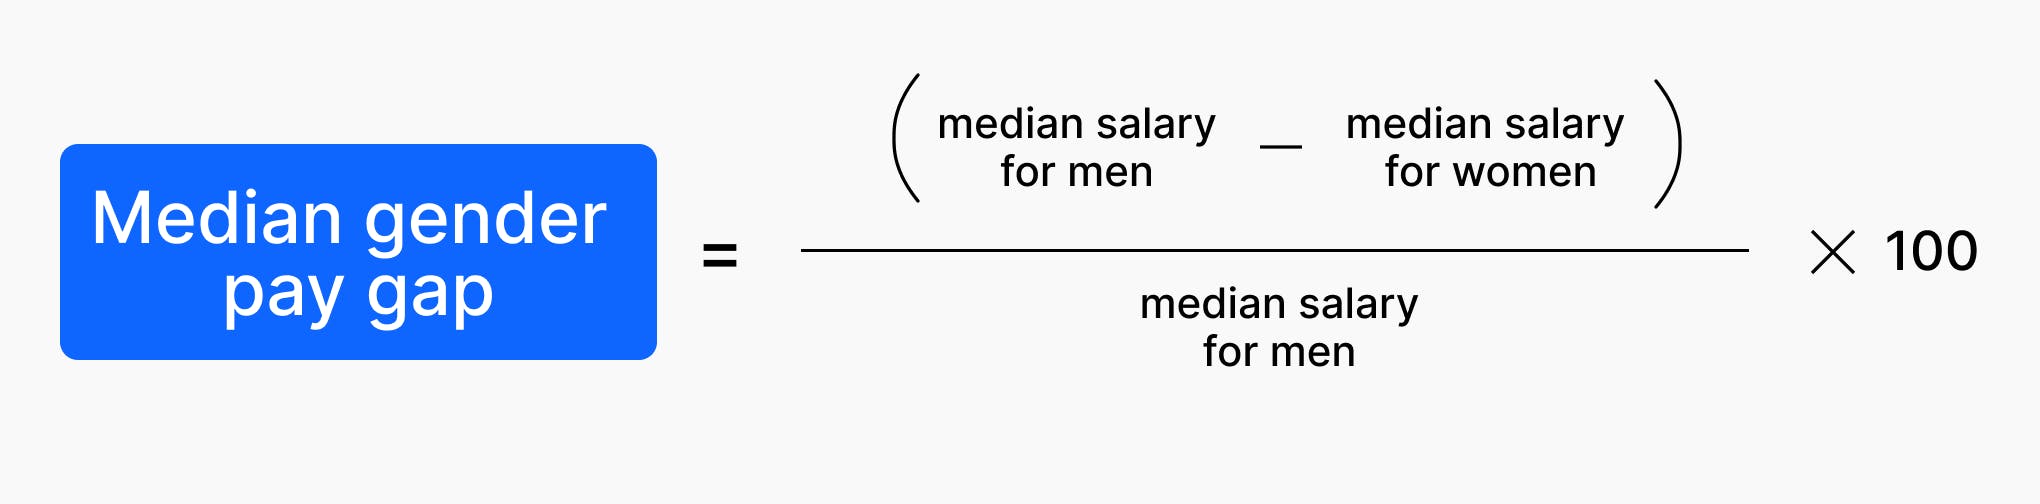 (median salary for men – median salary for women) / median salary for men x 100